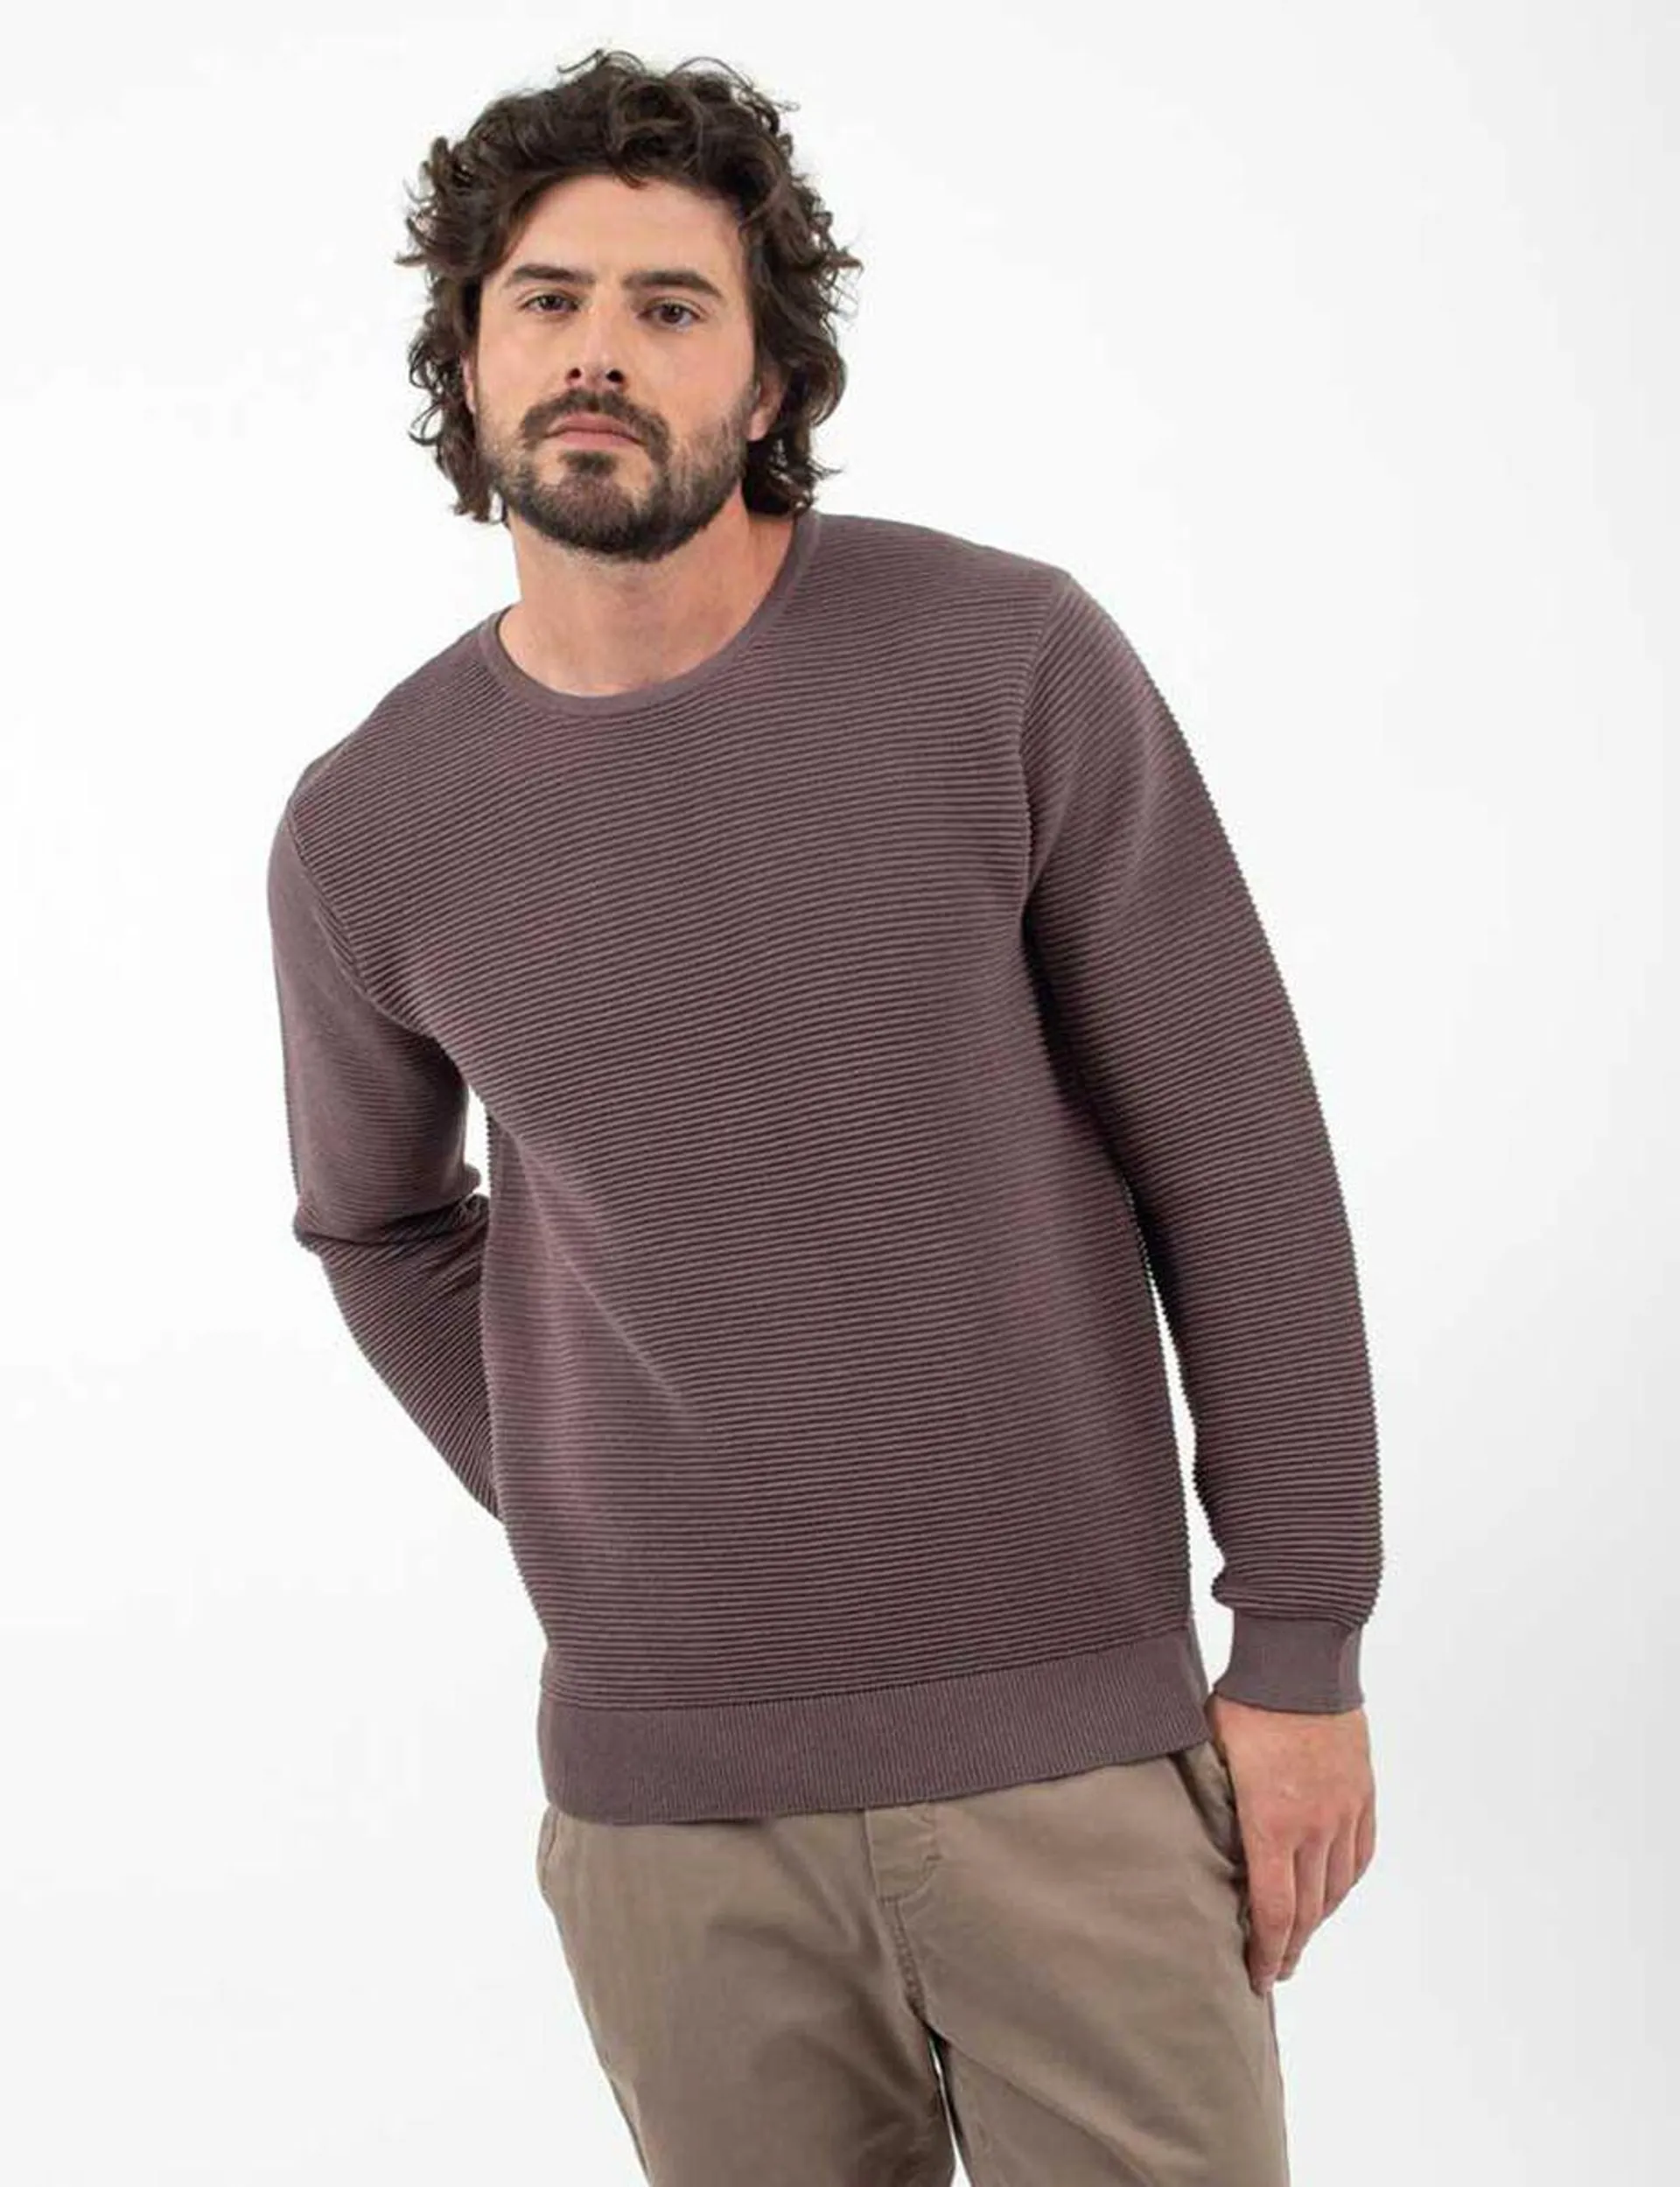 Sweater Hombre Zibel